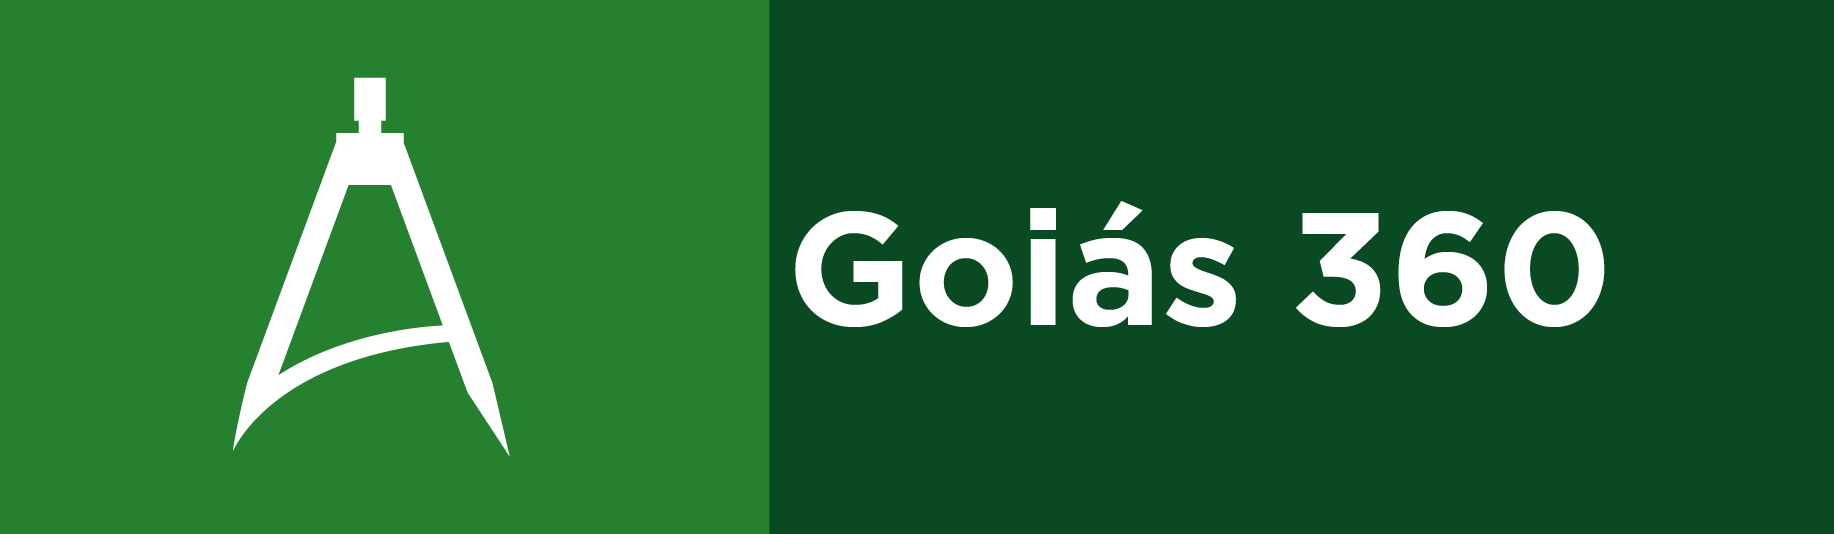 Goiás 360